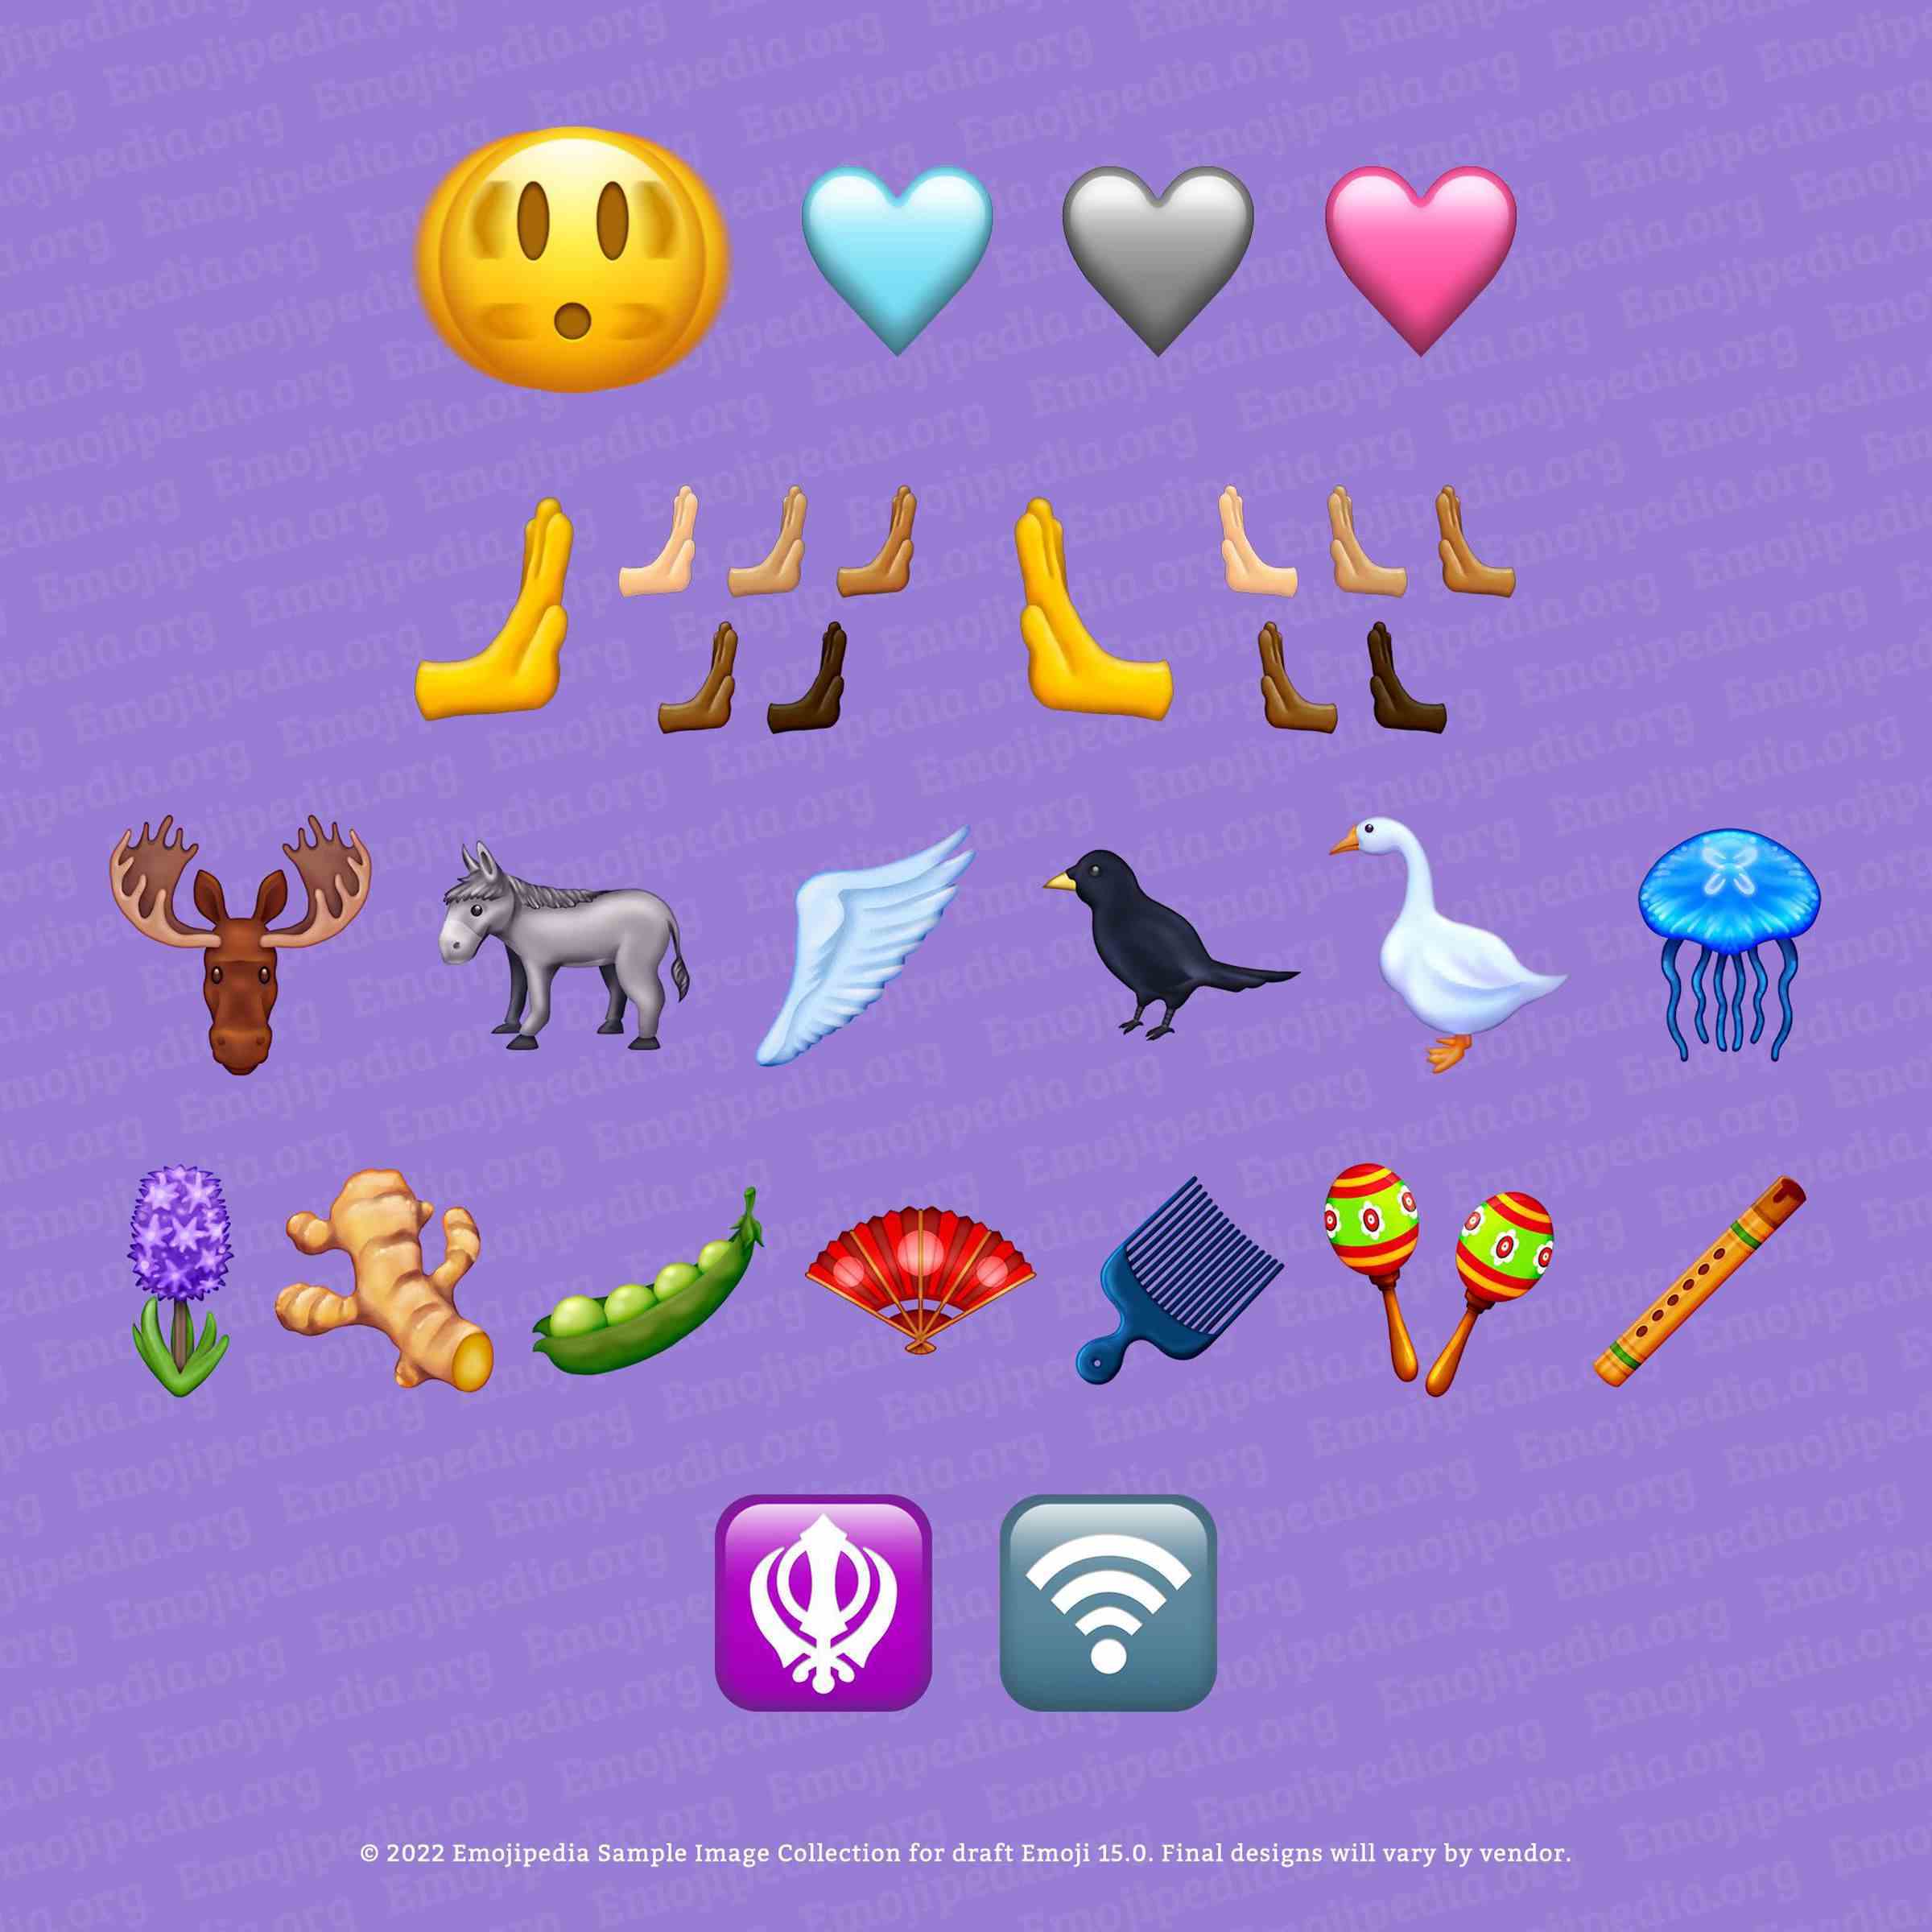 Unicode 15.0'daki yeni emoji.